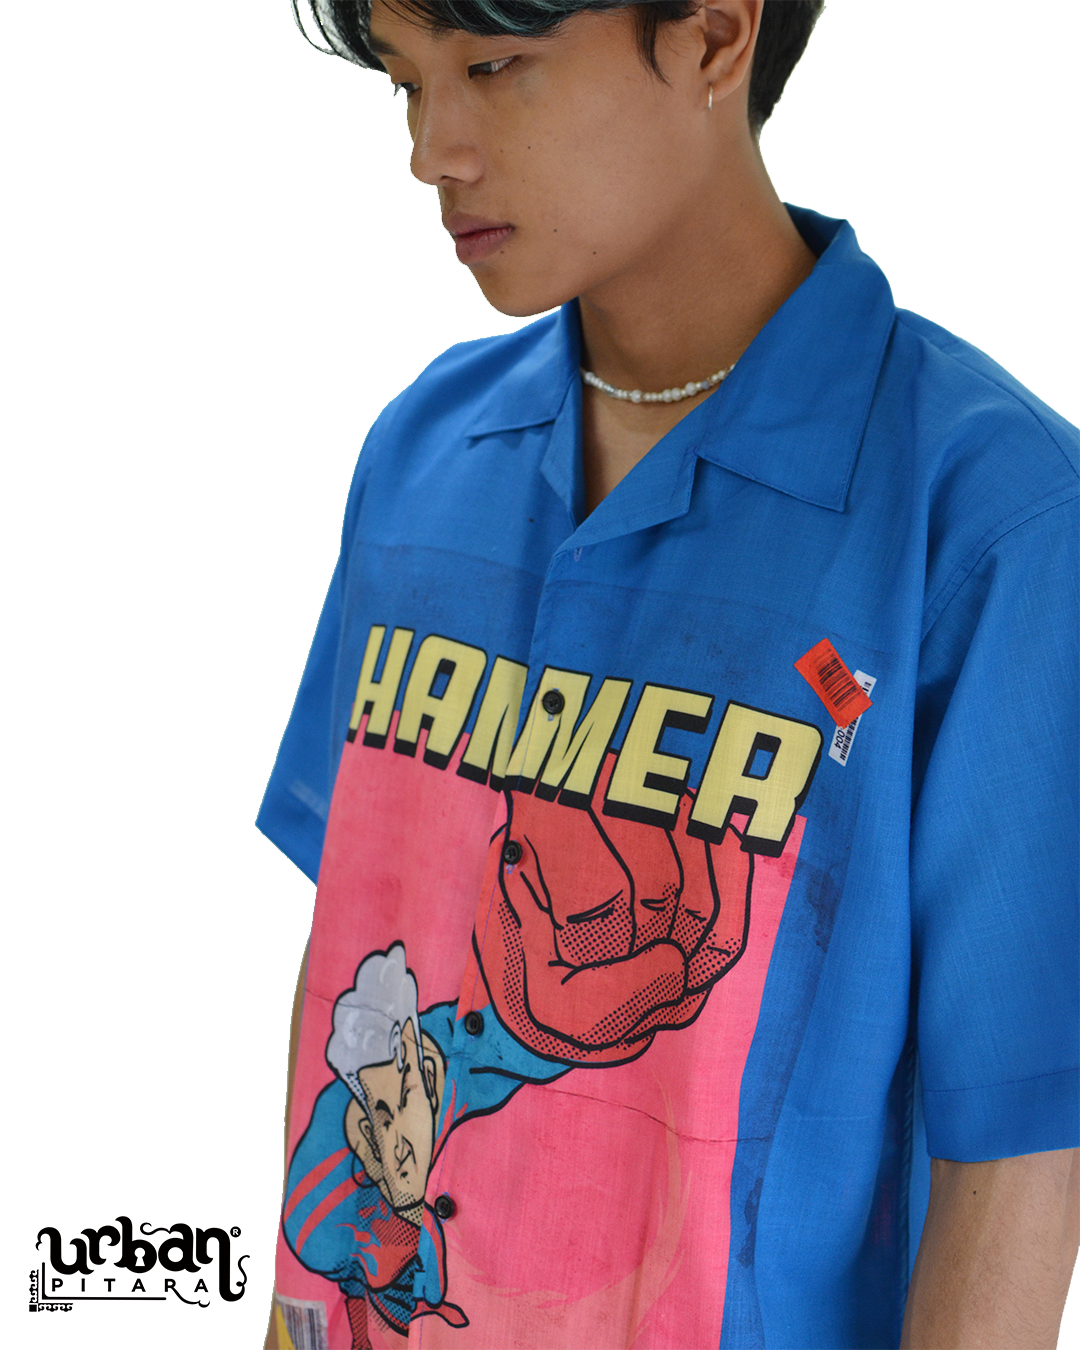 Hammer Shirt